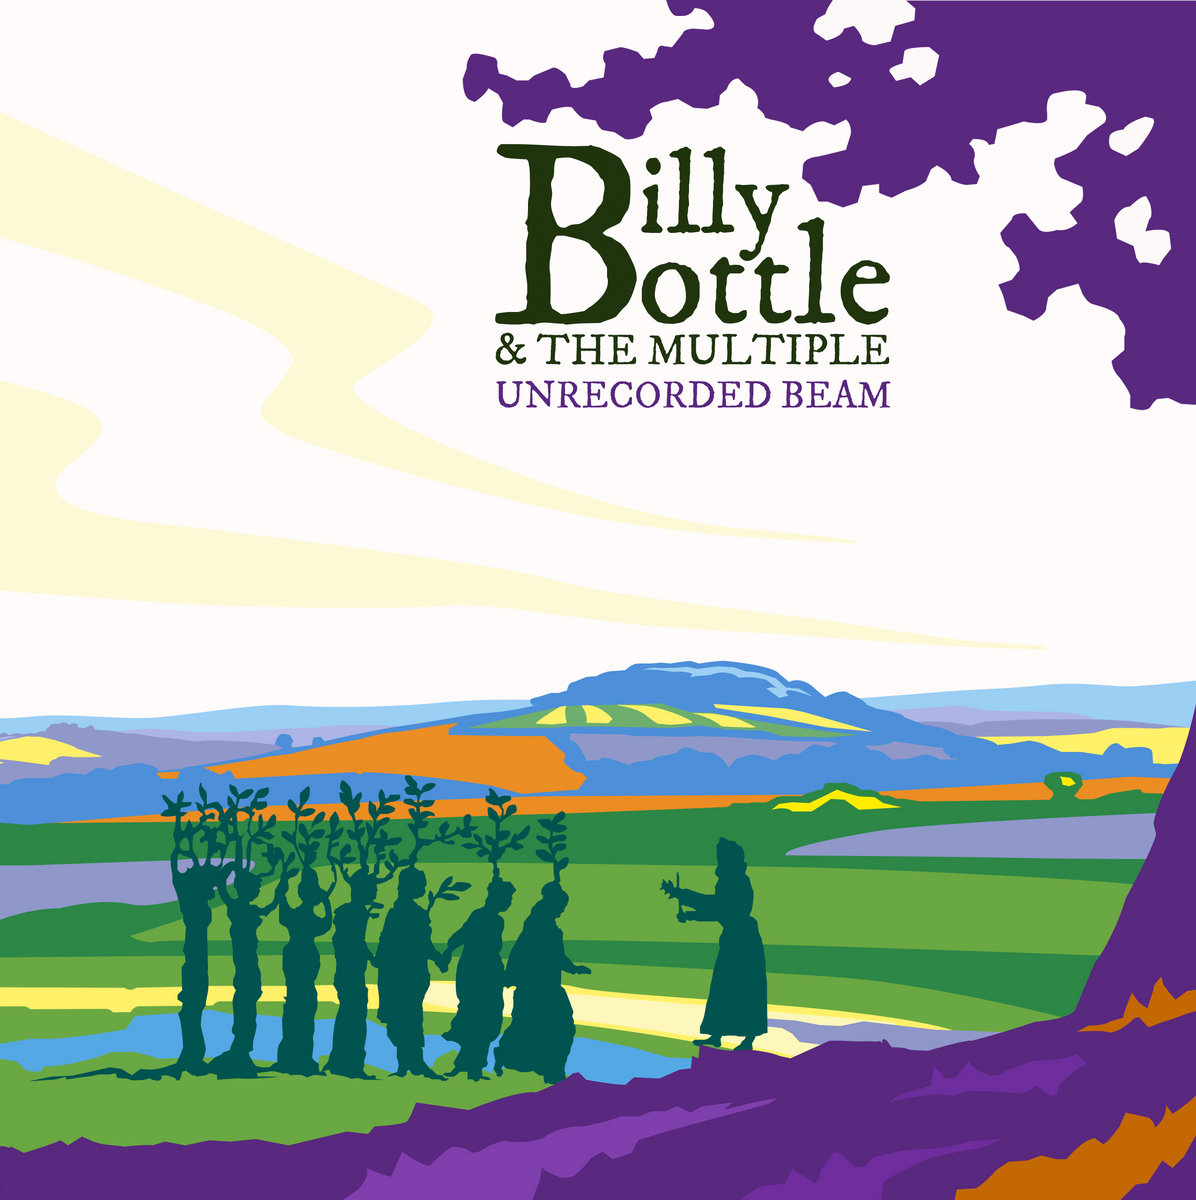 Unrecorded Beam  Billie Bottle  The Multiple  Billie Bottle